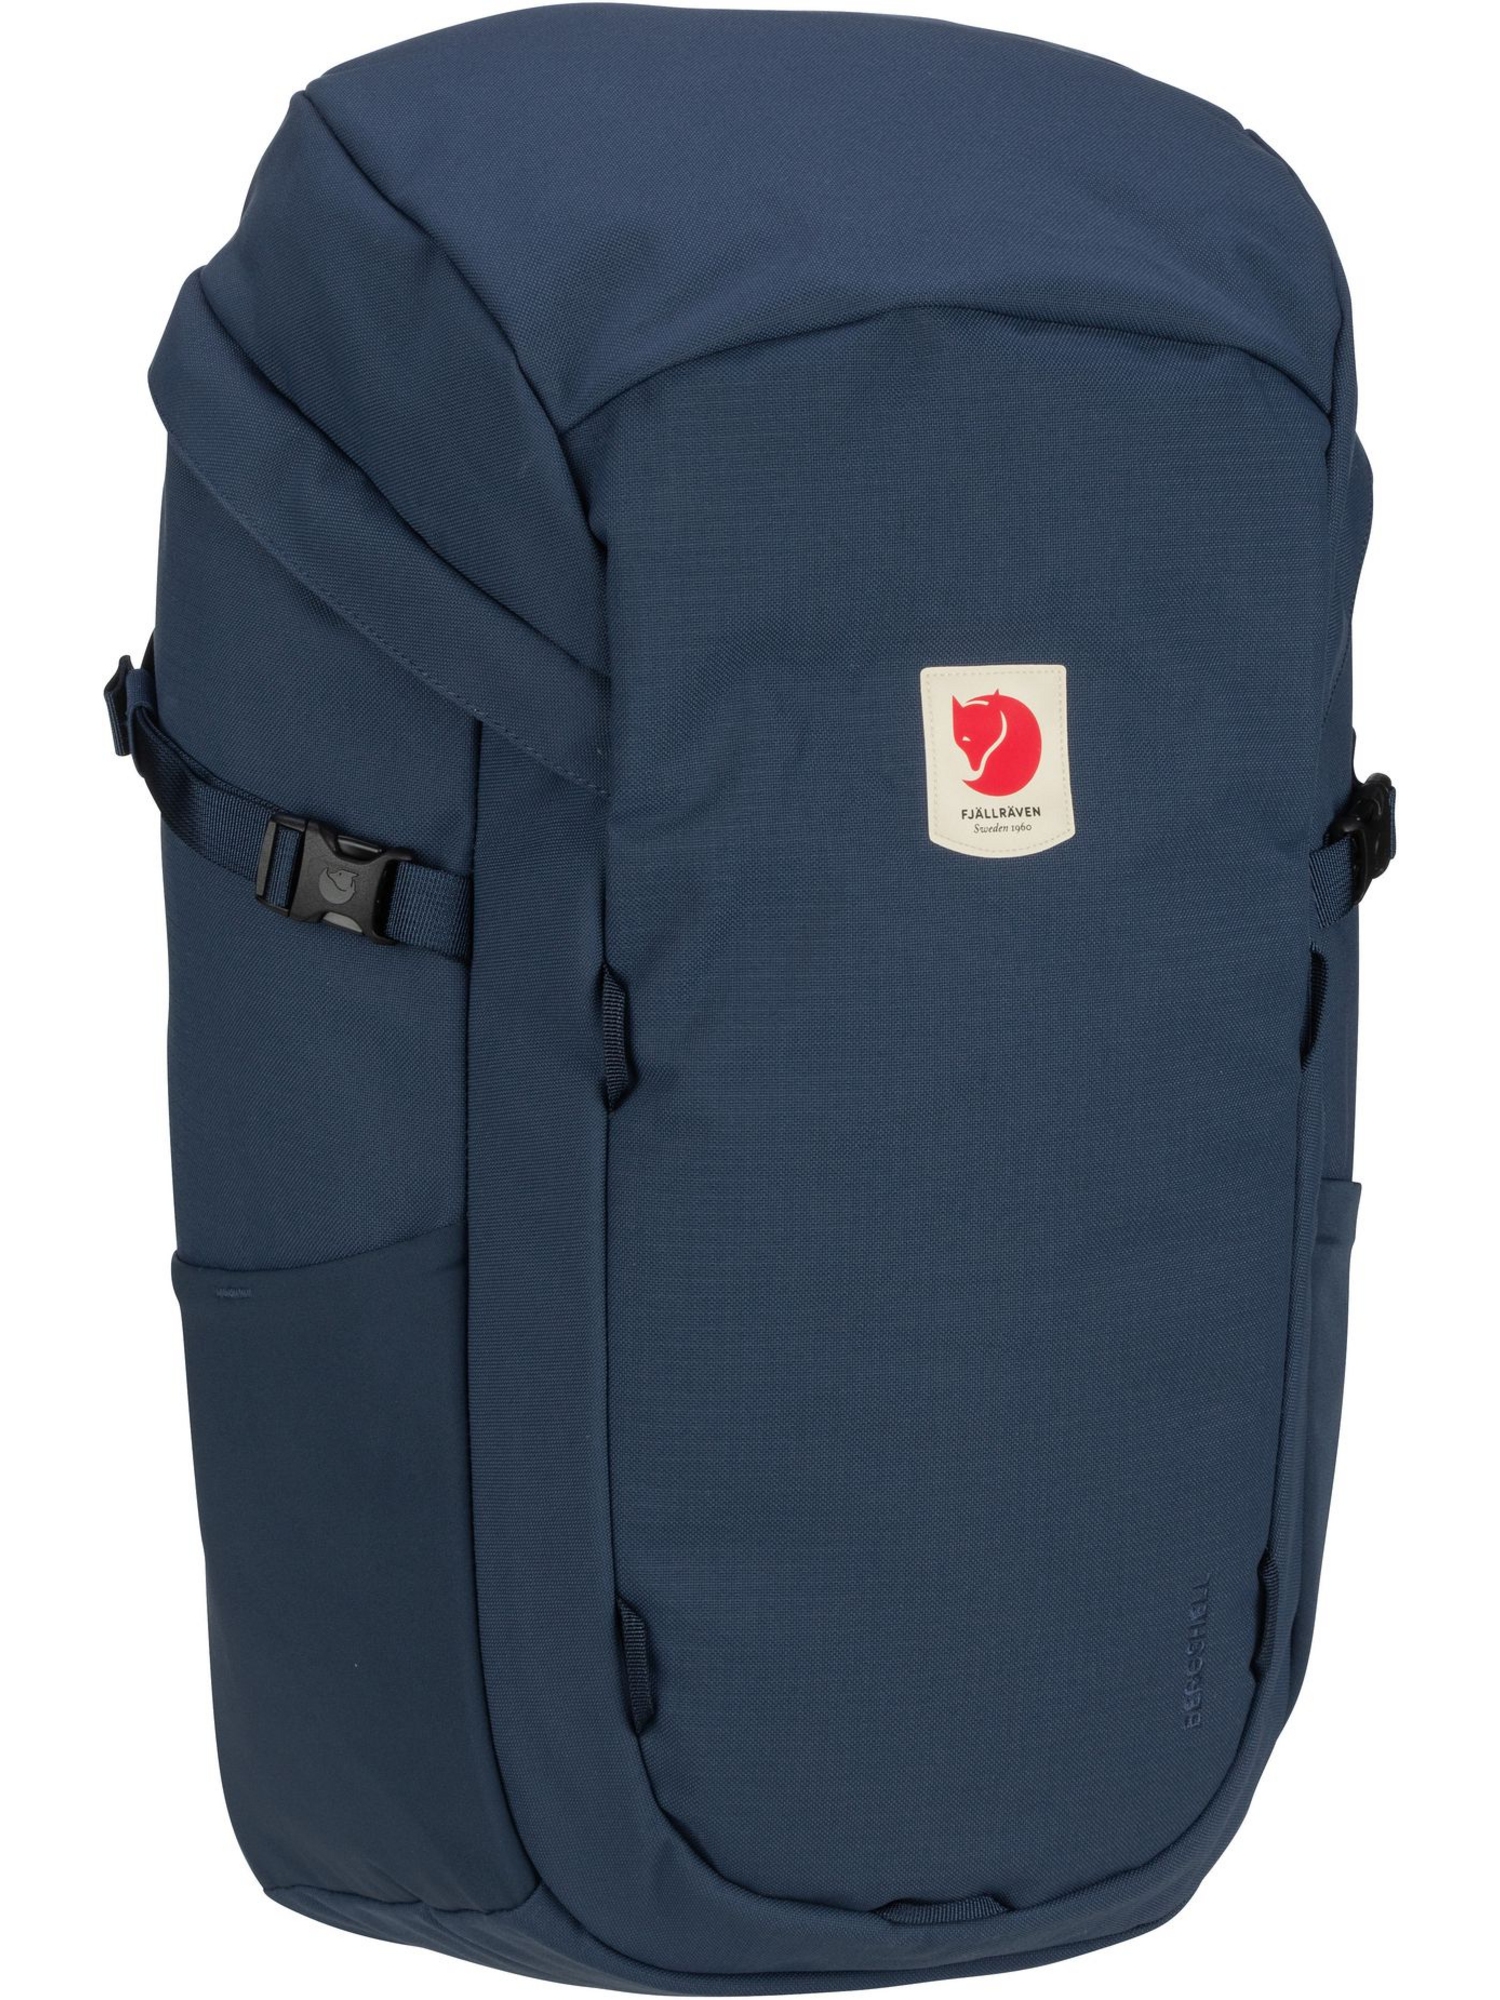 Рюкзак FJÄLLRÄVEN / Backpack Ulvö 30, цвет Mountain Blue рюкзак ulvö rolltop 30 fjällräven черный